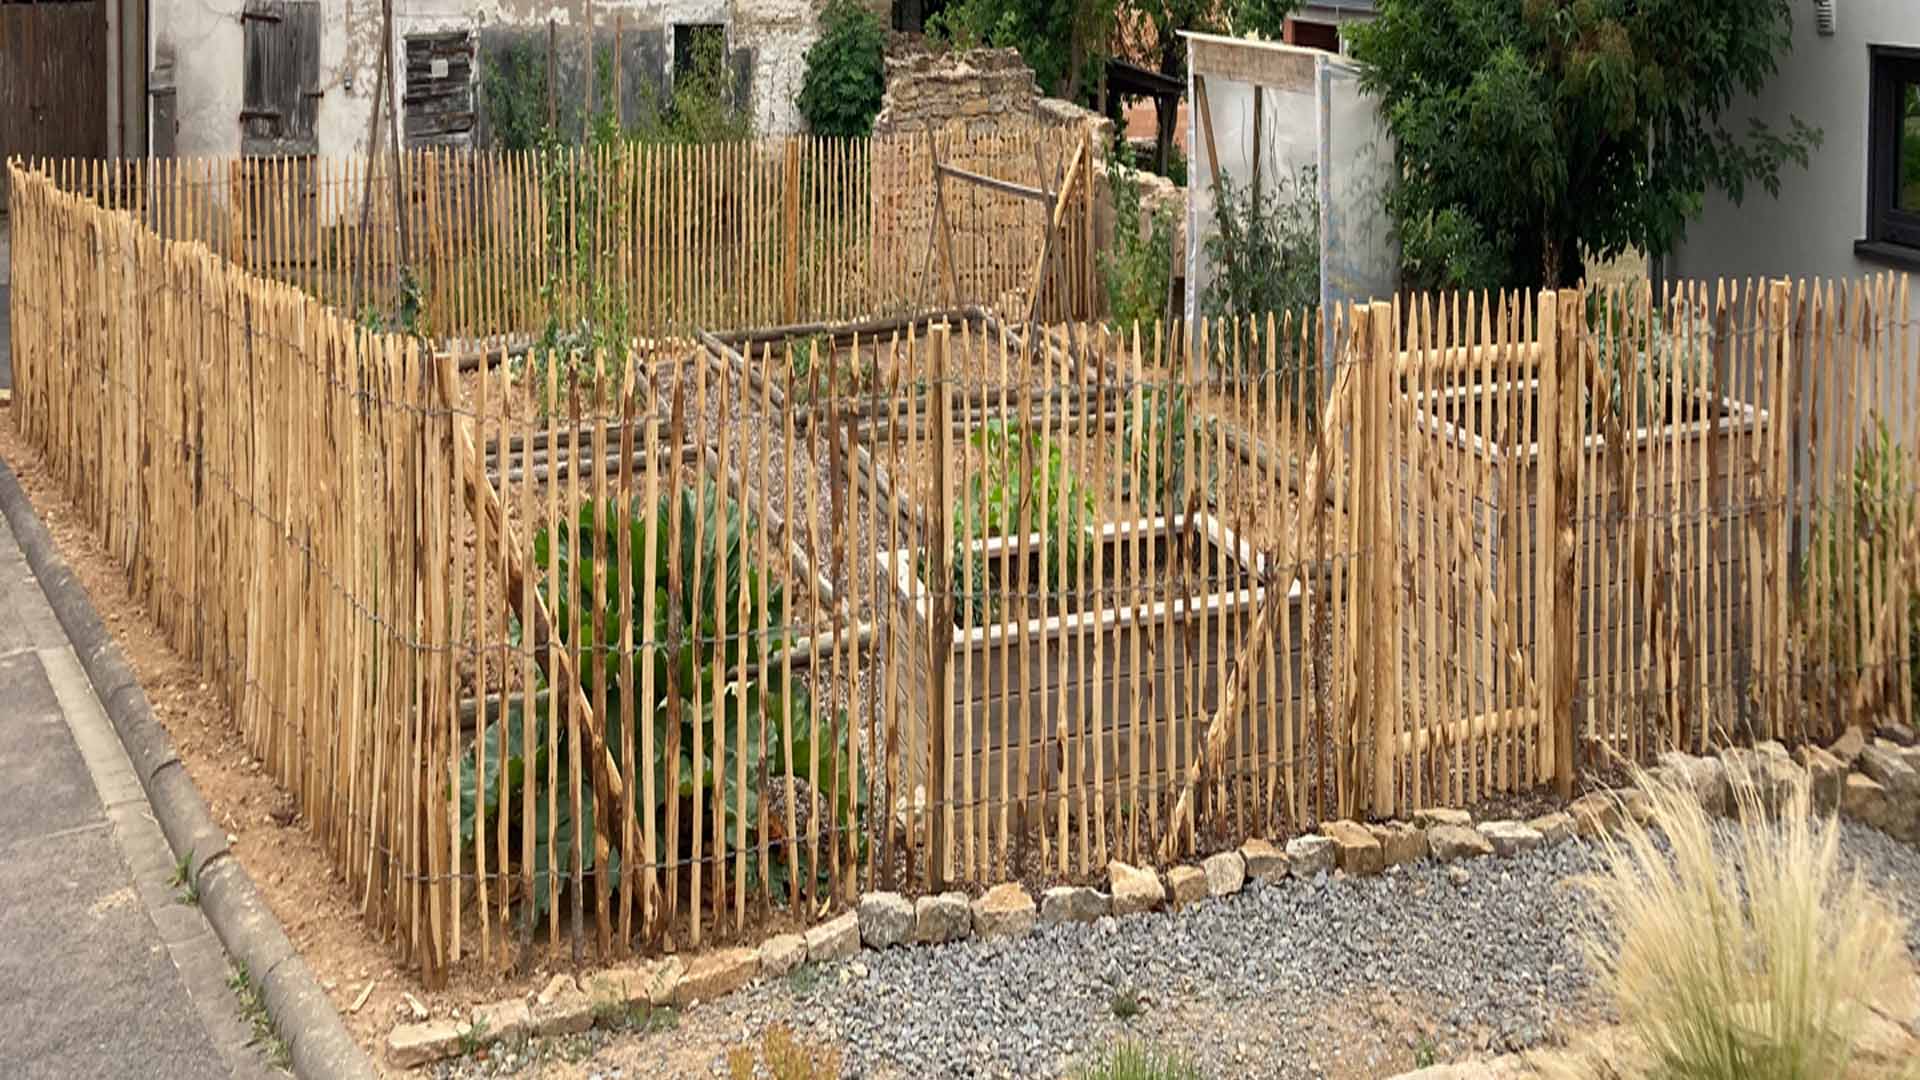 Bauerngarten anlegen | Gartengestaltung mit Holz